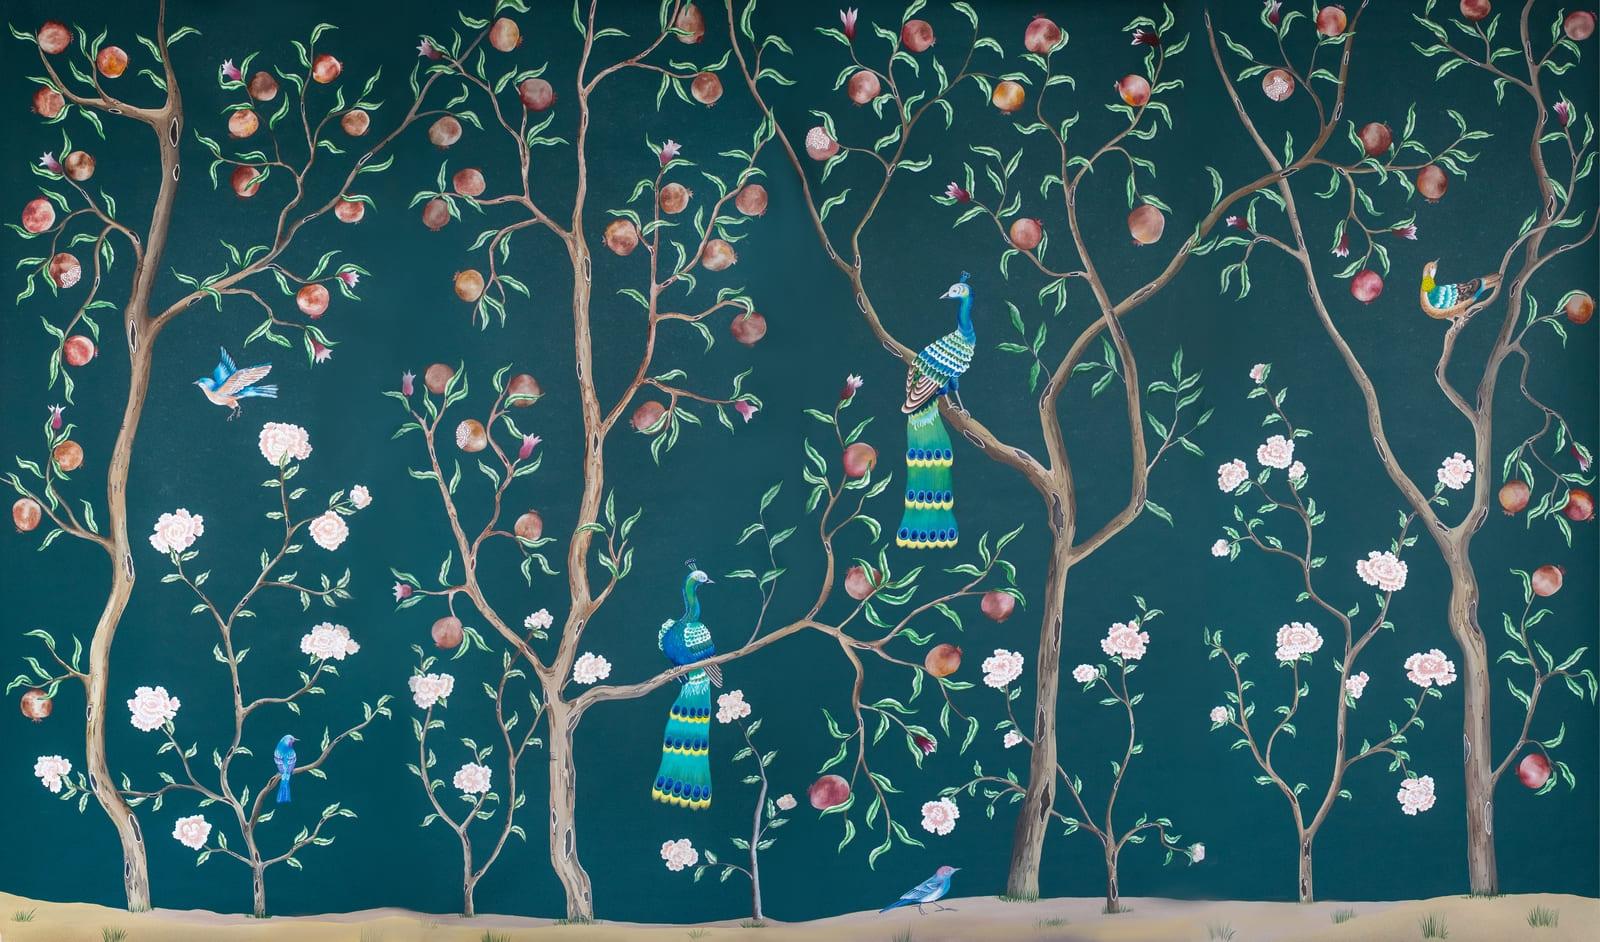 Pfauengarten auf tealfarbenem Hintergrund in Lederoptik: ein mystischer Garten mit Pfauen und exotischen Vögeln auf Granatapfelbäumen, inspiriert von einem Original aus der Qing-Dynastie. Ein Satz von vier Hintergrundbildern.

Unsere Tapeten und